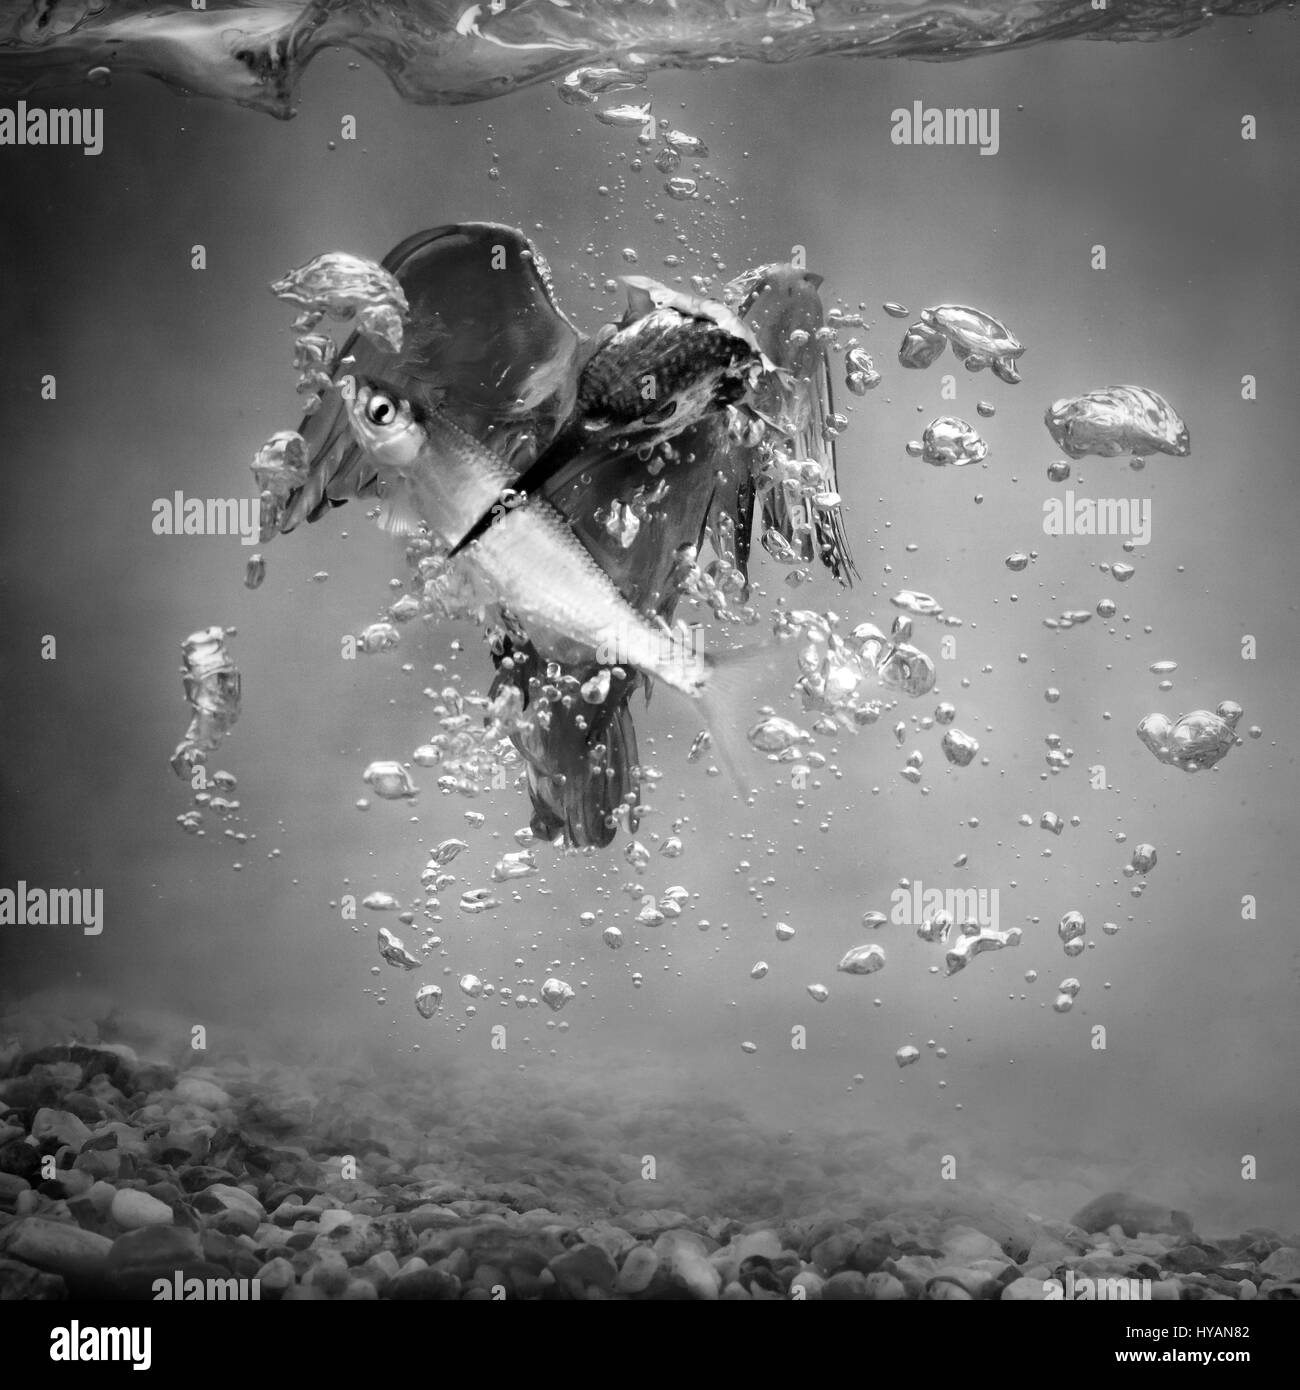 PALOVEC, Kroatien: Eine ZWEIJÄHRIGE Quest um das perfekte Eisvogel Bild aufzuzeichnen wurde schließlich von einem besessen Verkehr Techniker abgeschlossen. Bilder zeigen unglaubliche Aufnahmen von der super-schnellen Eisvogel Tauchen bei bis zu 25 Meilen pro Stunde in das kristallklare Wasser und seine Mahlzeit mit Fisch zu fangen. Konzentrierte sich völlig auf seine Beute, der Eisvogel stählernen Fokus und Beleuchtung, die schnelle Bewegung sensationell in dieser Serie von Bildern eingefangen hat. Teilzeit war Fotograf und Verkehr Techniker Petar Sabol (33) also den schönen kleinen Vogel fasziniert, die er in der Nähe von seinem Haus in Palovec, Cro entdeckt Stockfoto